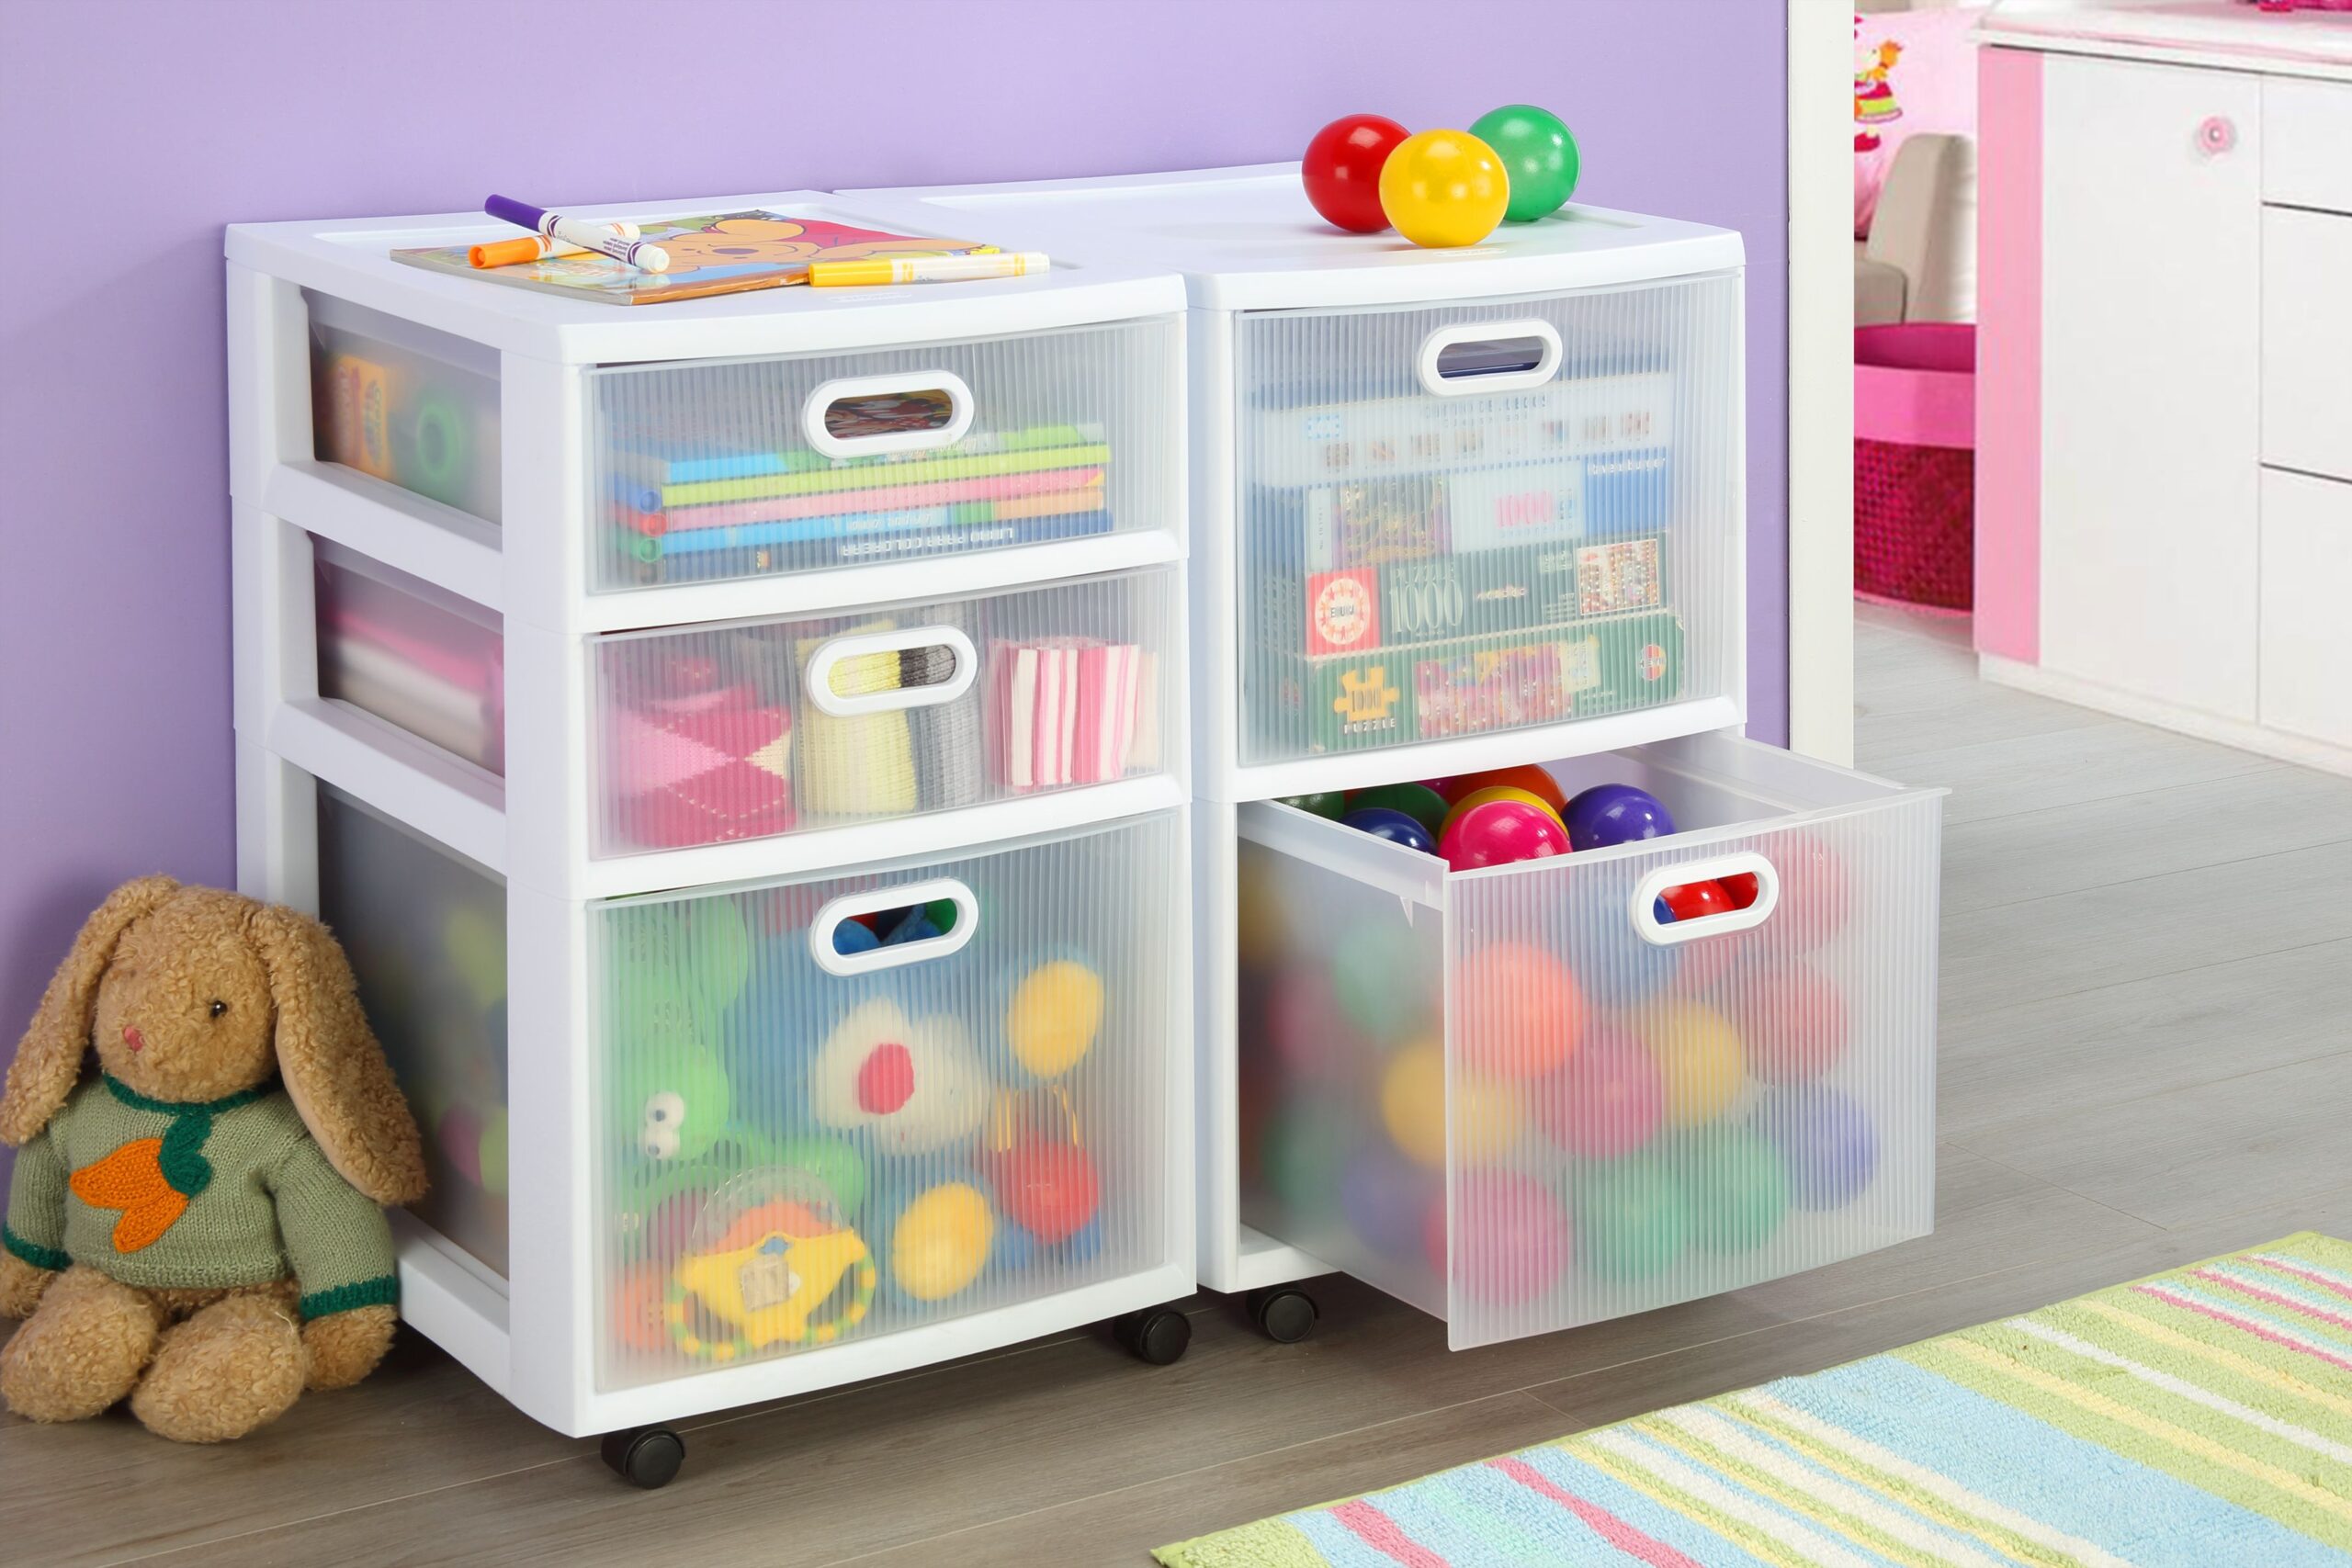 ¿Cuáles son los mejores muebles para guardar juguetes de manera organizada y práctica?